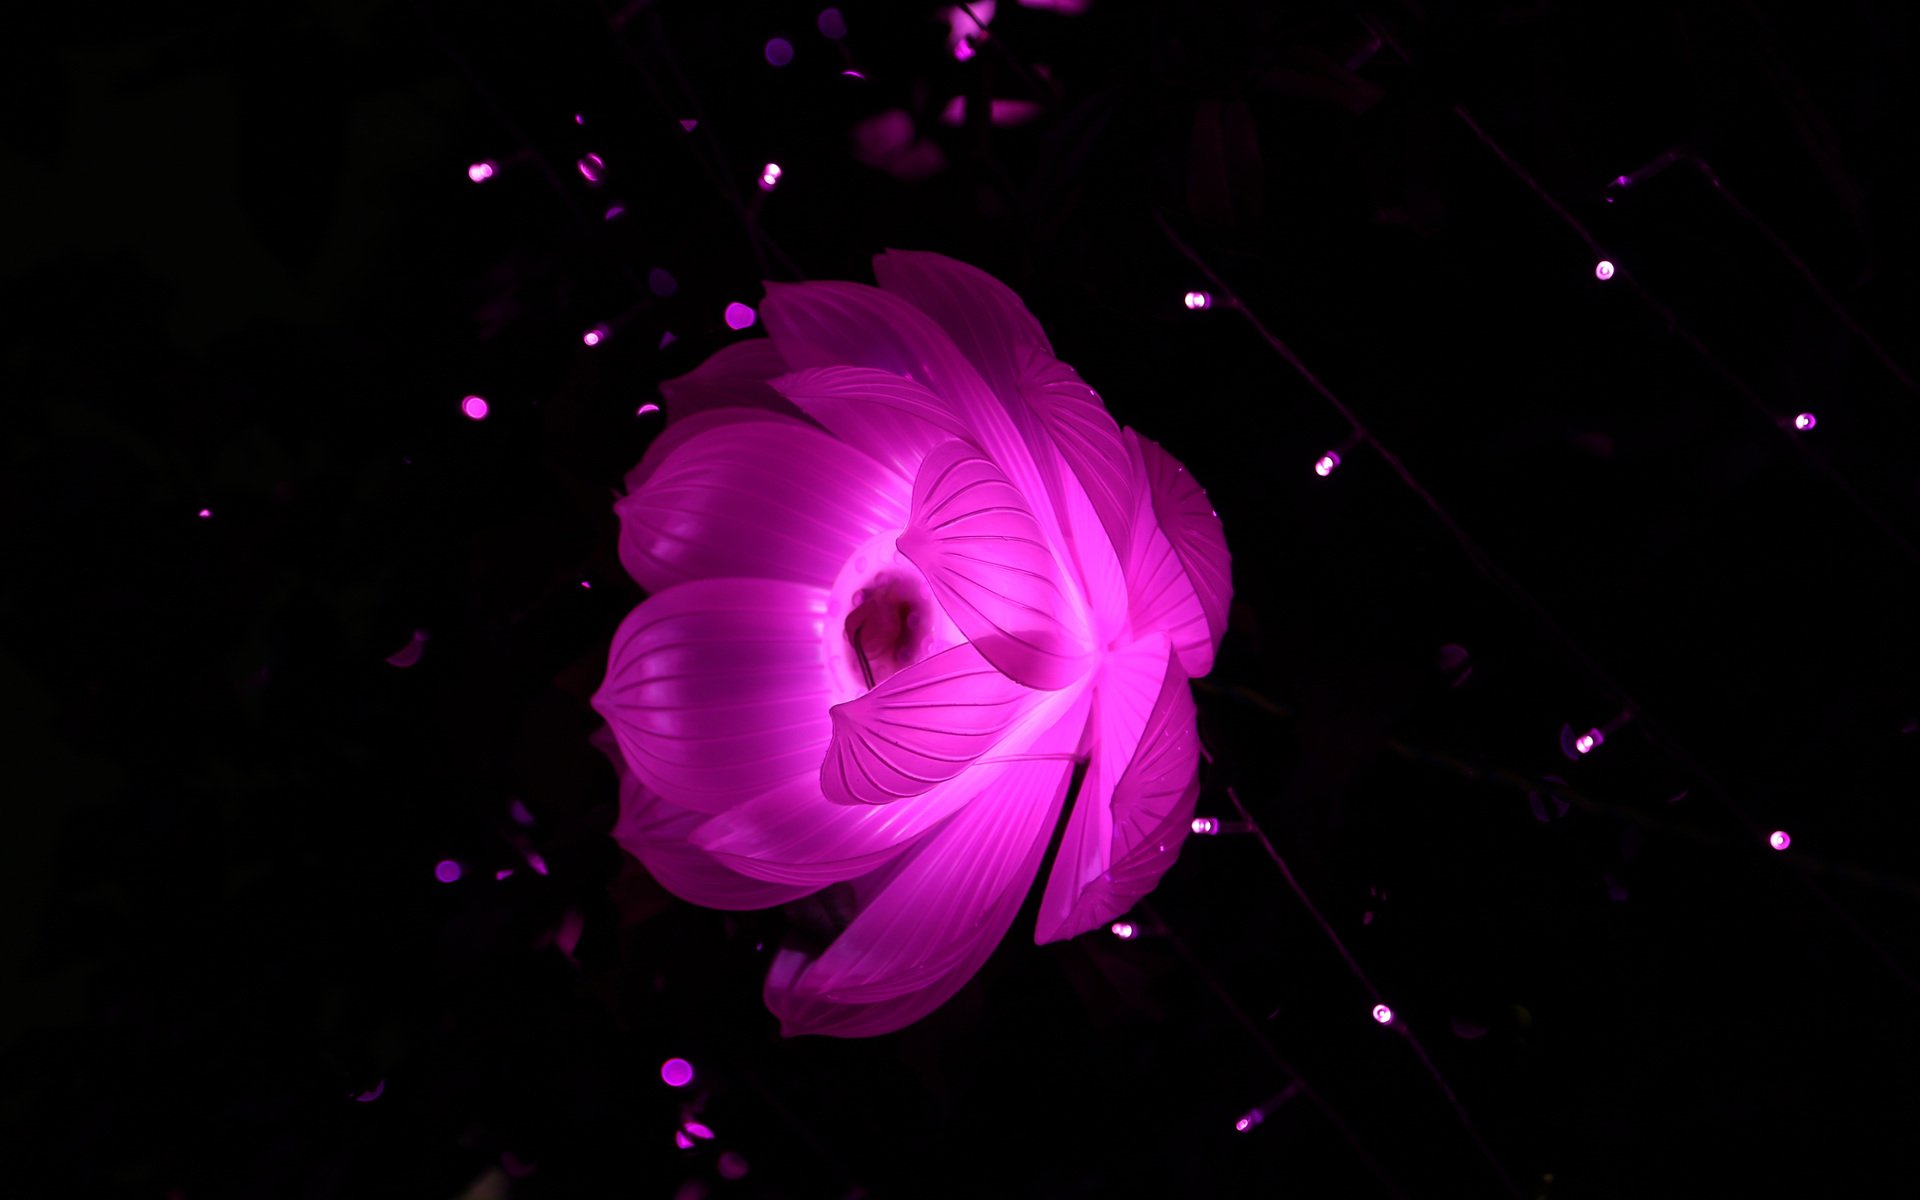 flower-shape-artistic-light-kw.jpg